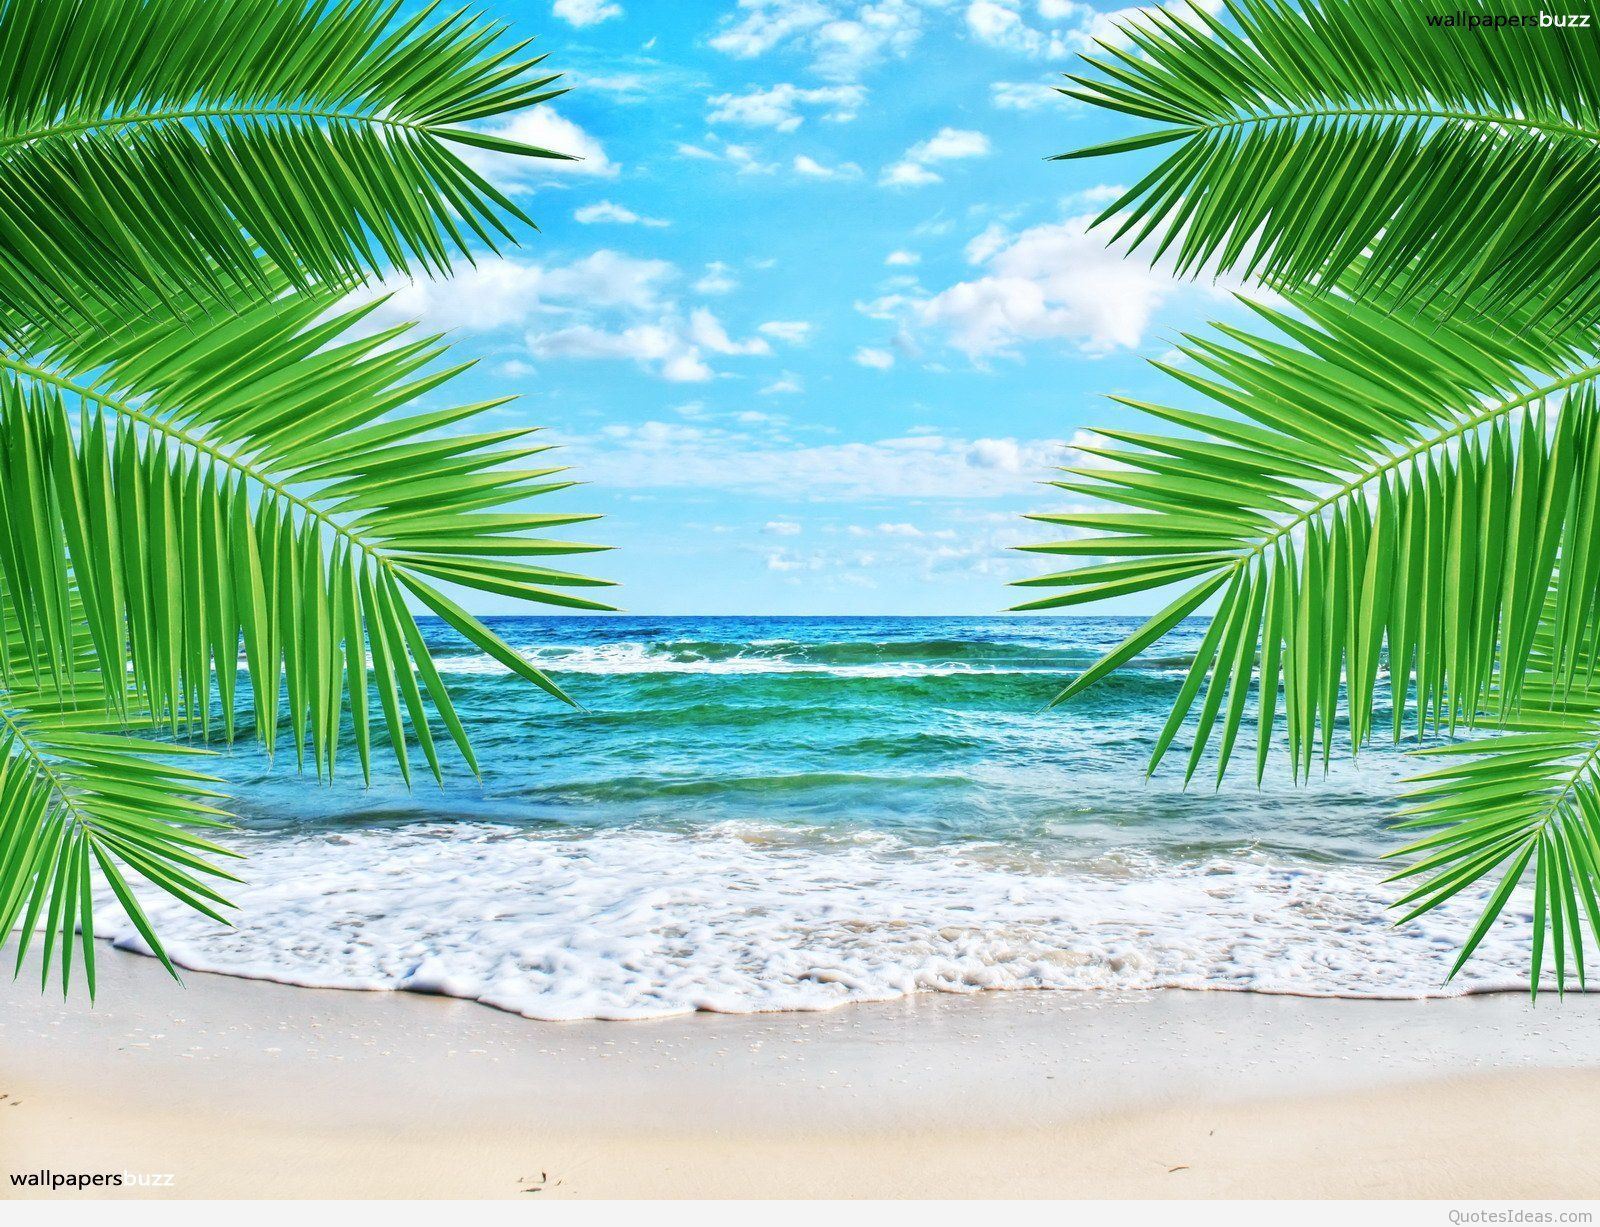 Summer Feeling HD desktop wallpaper, Widescreen, High Definition